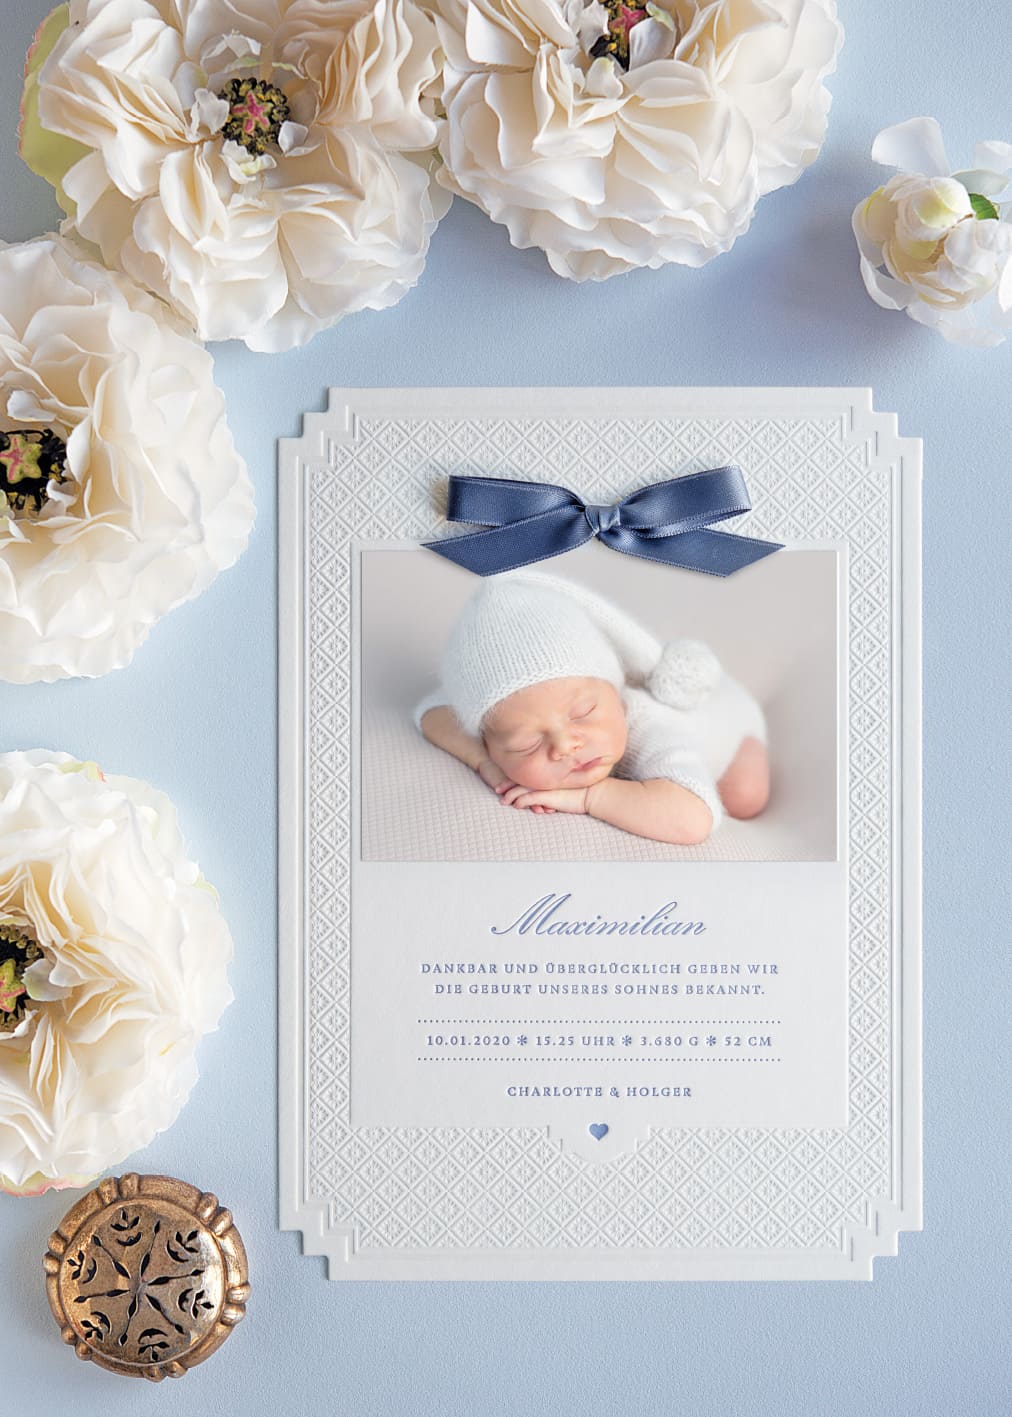 Letterpress Geburtskarte mit eleganter Prägung im A5 Format mit abgestuften Ecken, geprägtem Sternchenmuster und in Blau bedrucktem Text. Dazu ein aufgeklebtes Babyfoto, oberhalb eine blaue kleine Schleife in Blau